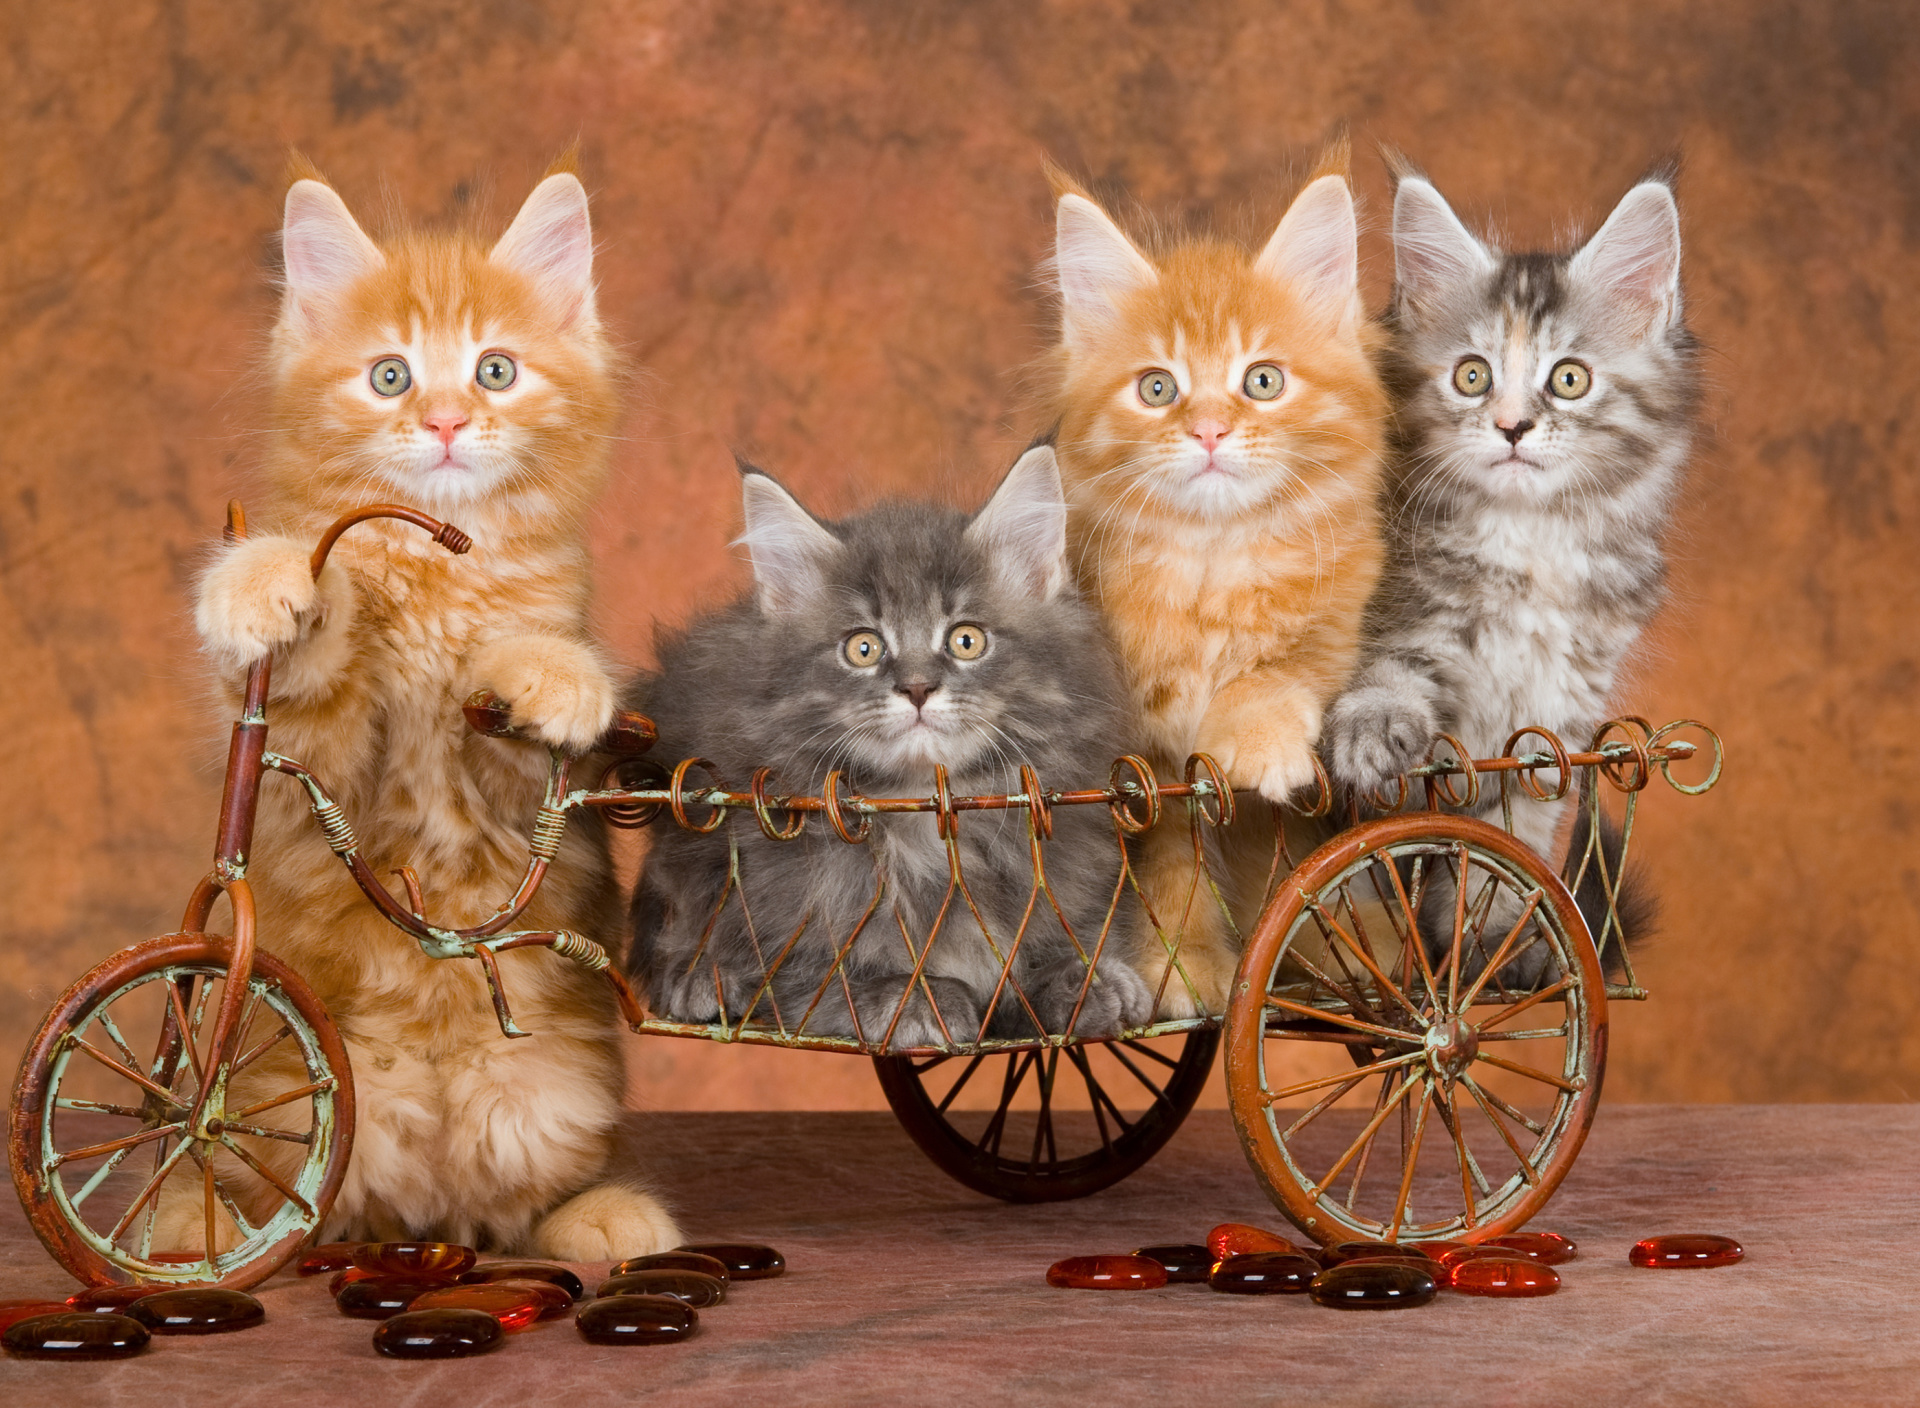 Das Young Kittens Wallpaper 1920x1408